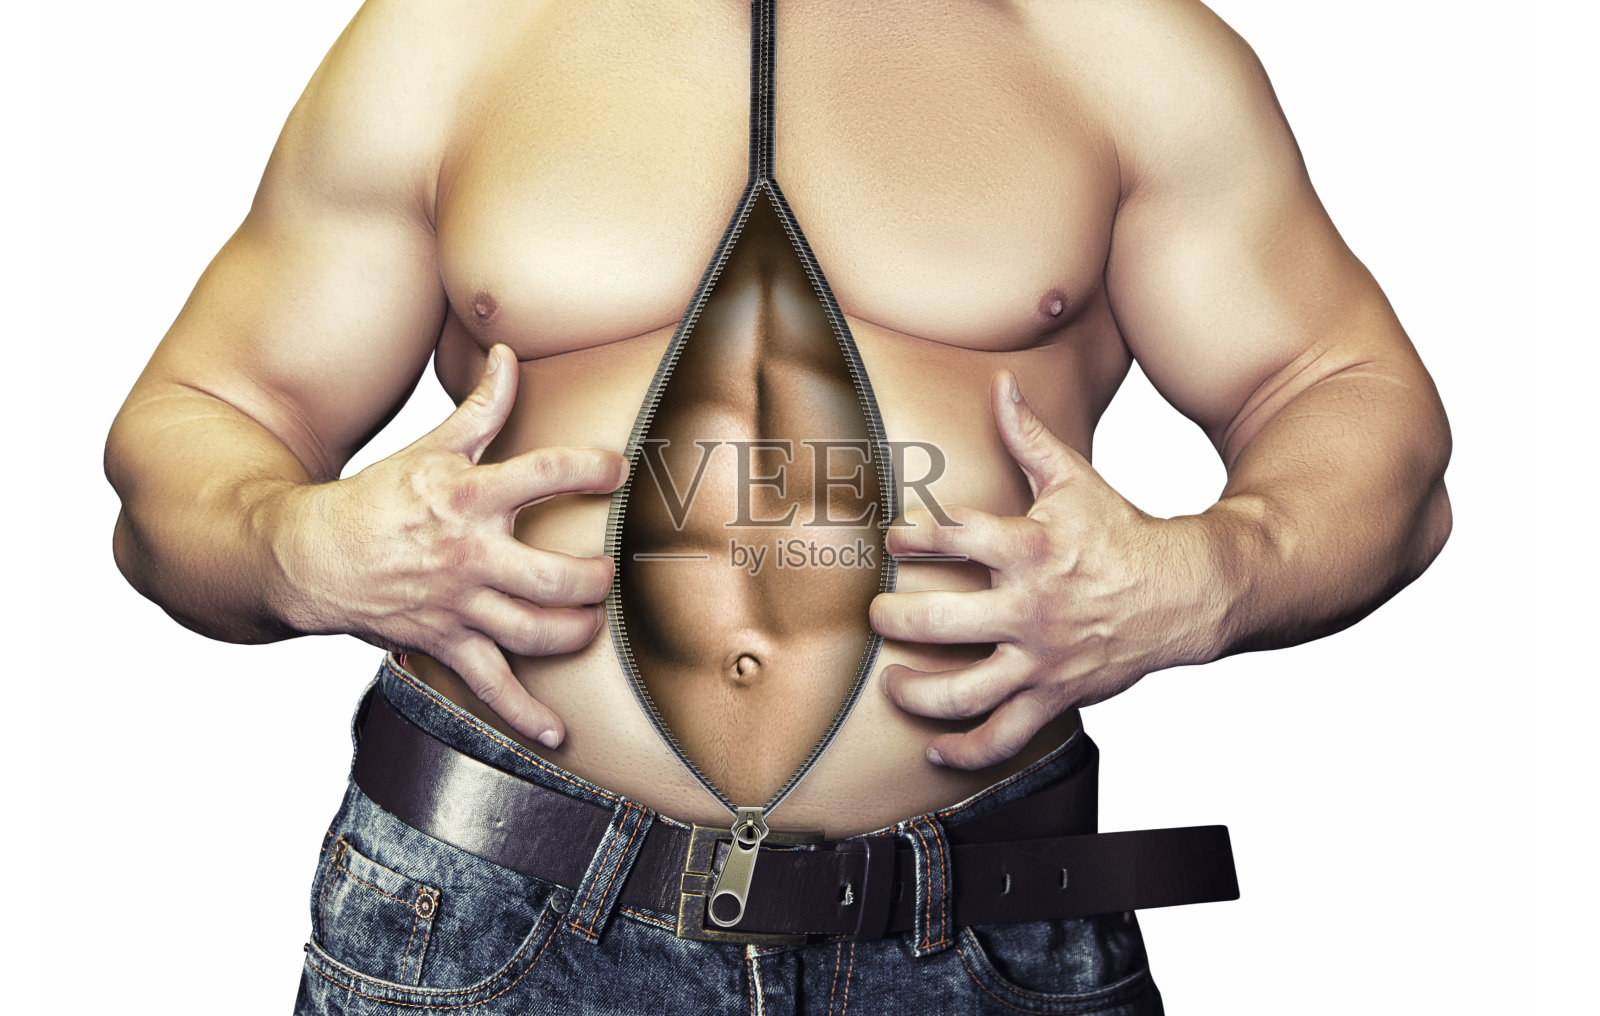 一个胖子的腹部变成了强壮的腹肌照片摄影图片